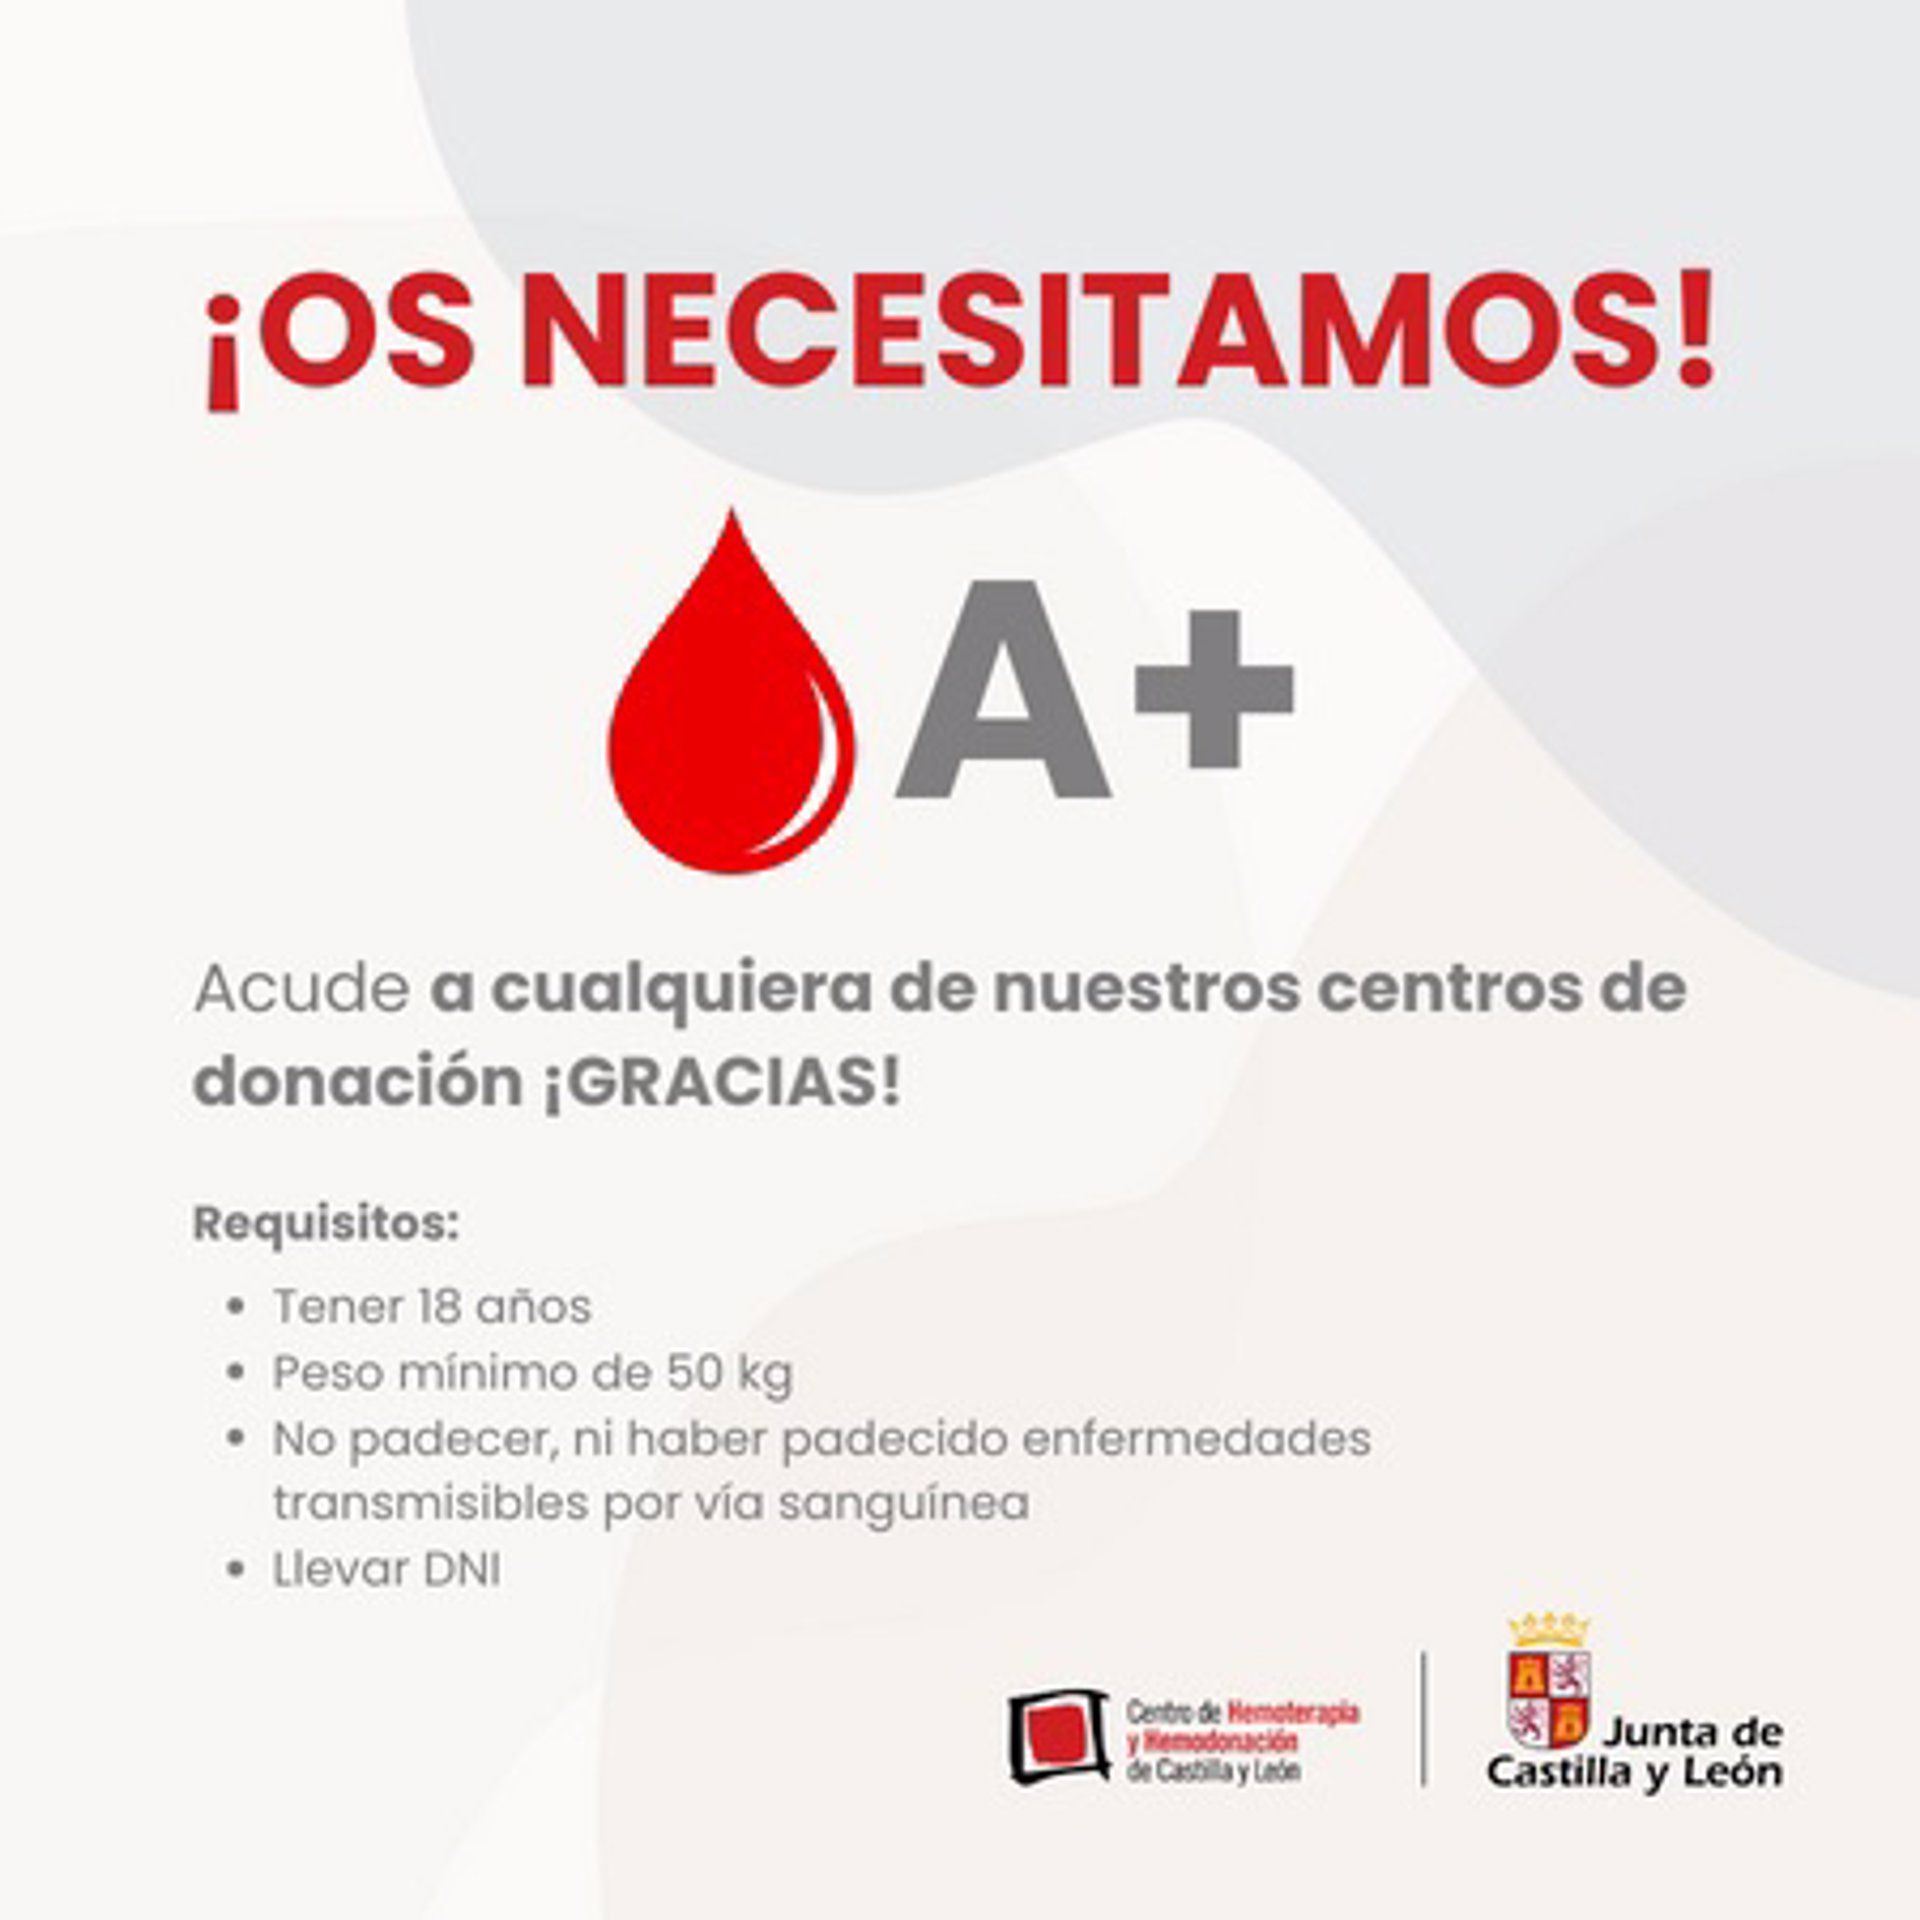 Gráfico solicitando donaciones de sangre A+. | Centro de Hemoterapia y Hemodonación de Castilla y León